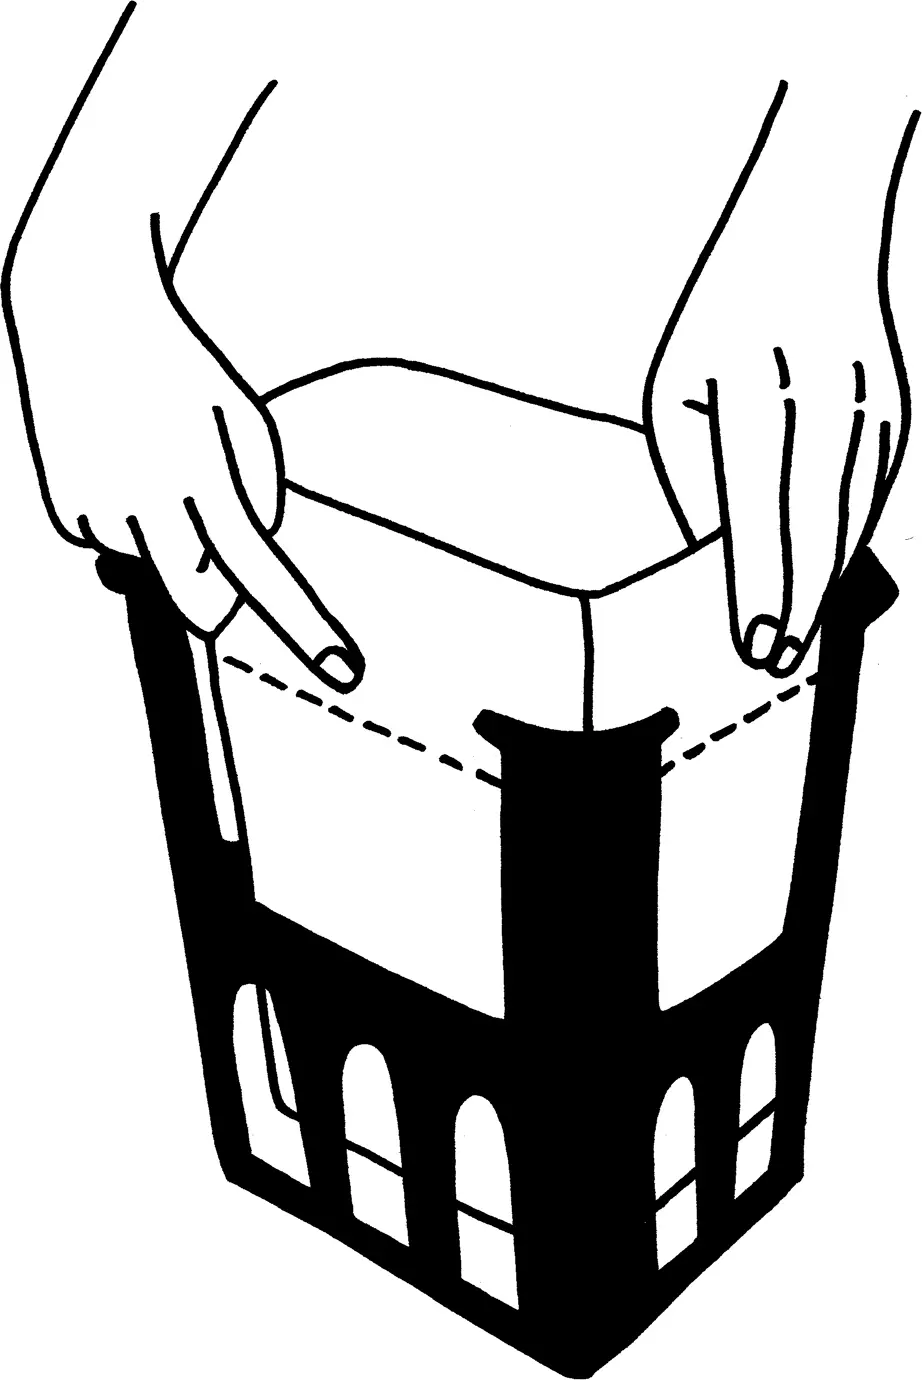 Illustration för hur du max får fylla en Papperspåse med matavfall